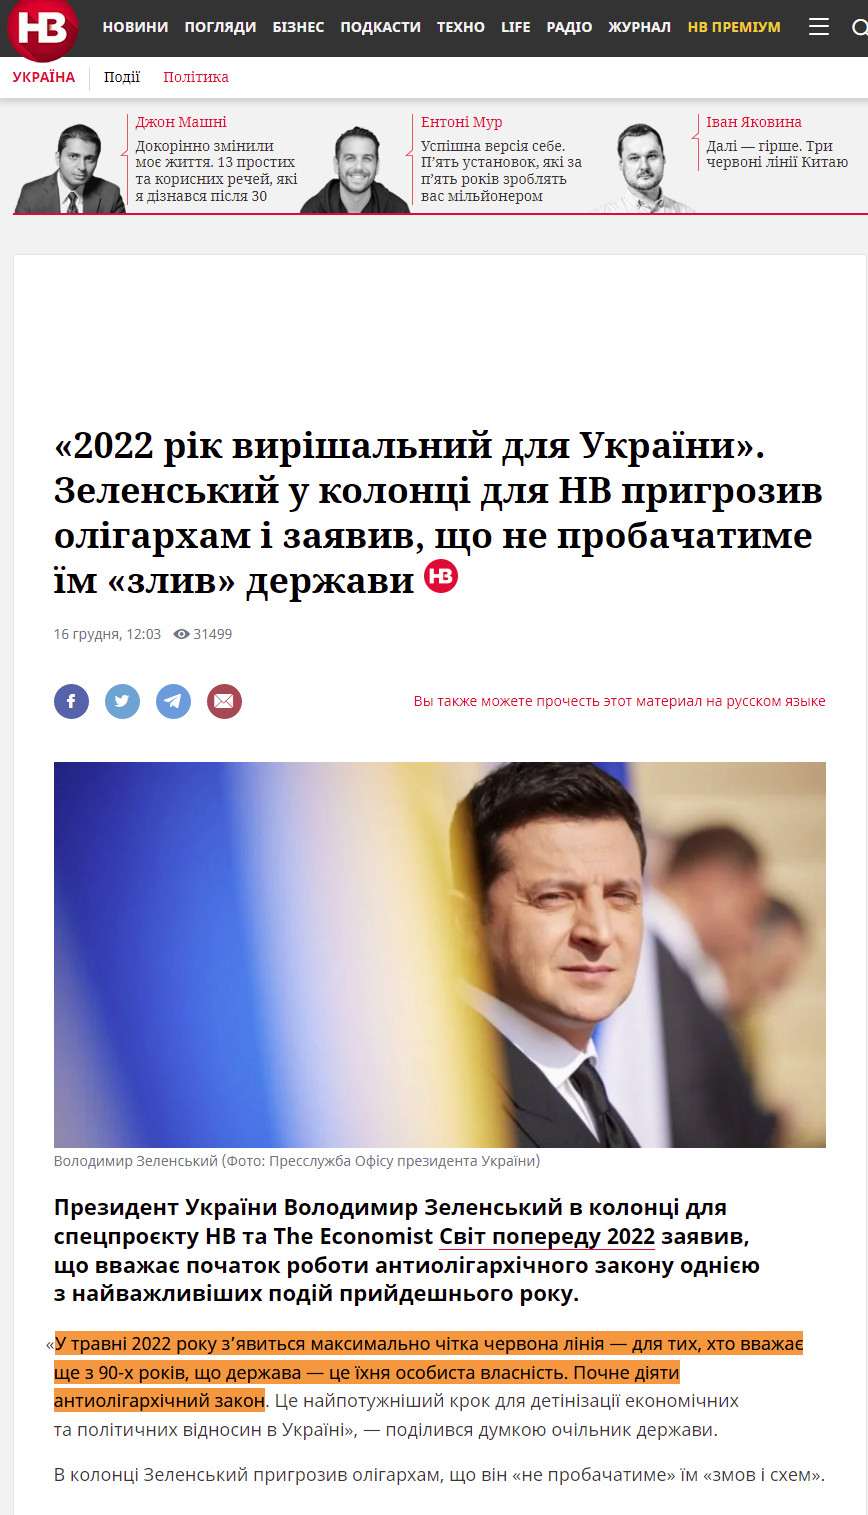 https://nv.ua/ukr/ukraine/politics/zelenskiy-pro-antioligarhichniy-zakon-u-2022-roci-specproyekt-nv-50202446.html